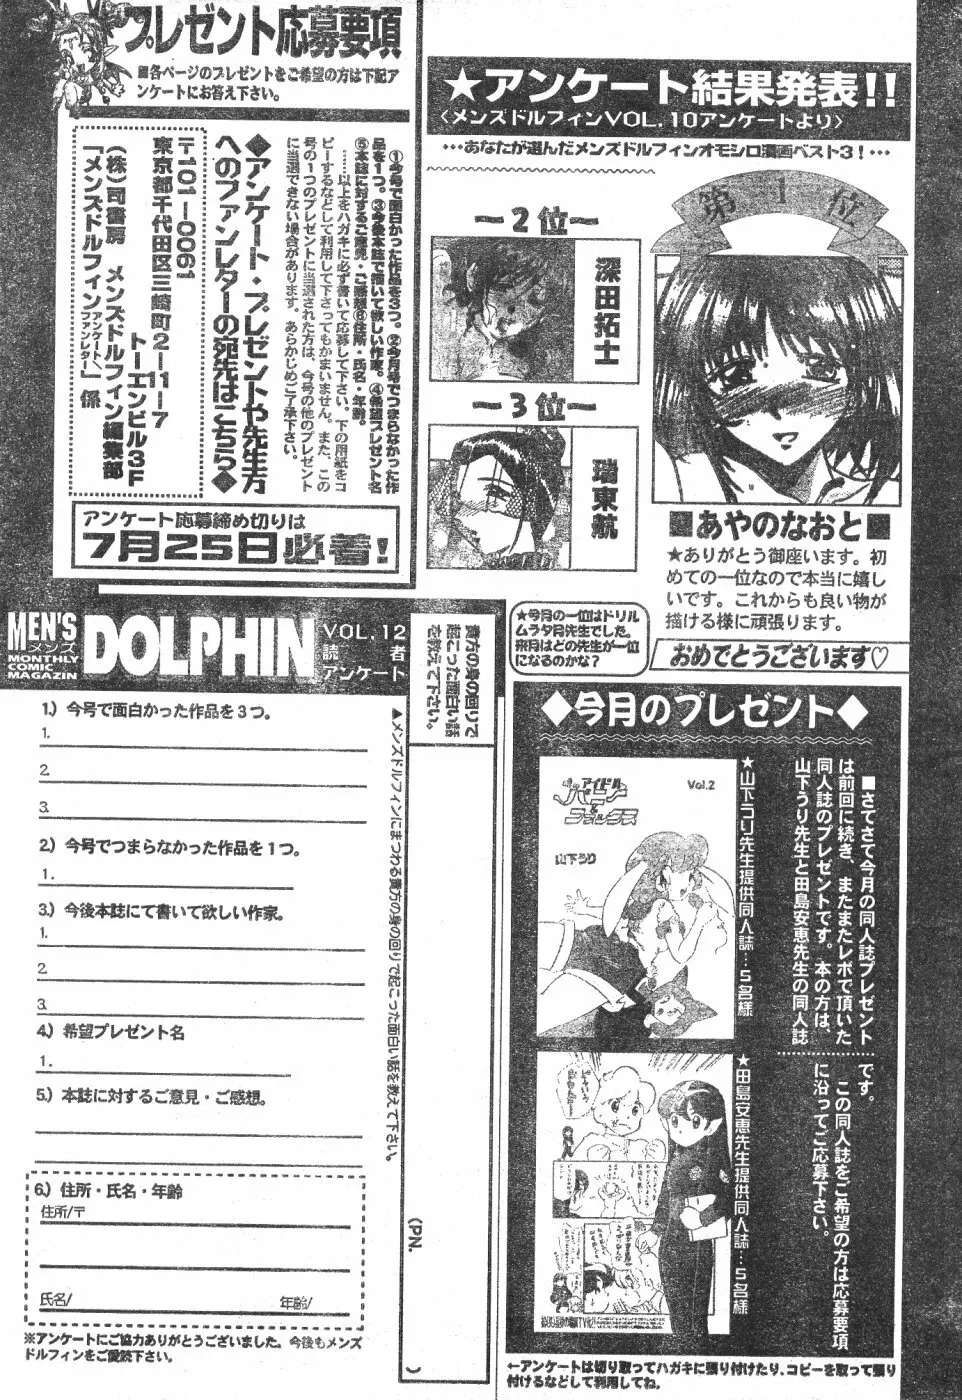 Men’s Dolphin Vol 12 2000-08-01 201ページ